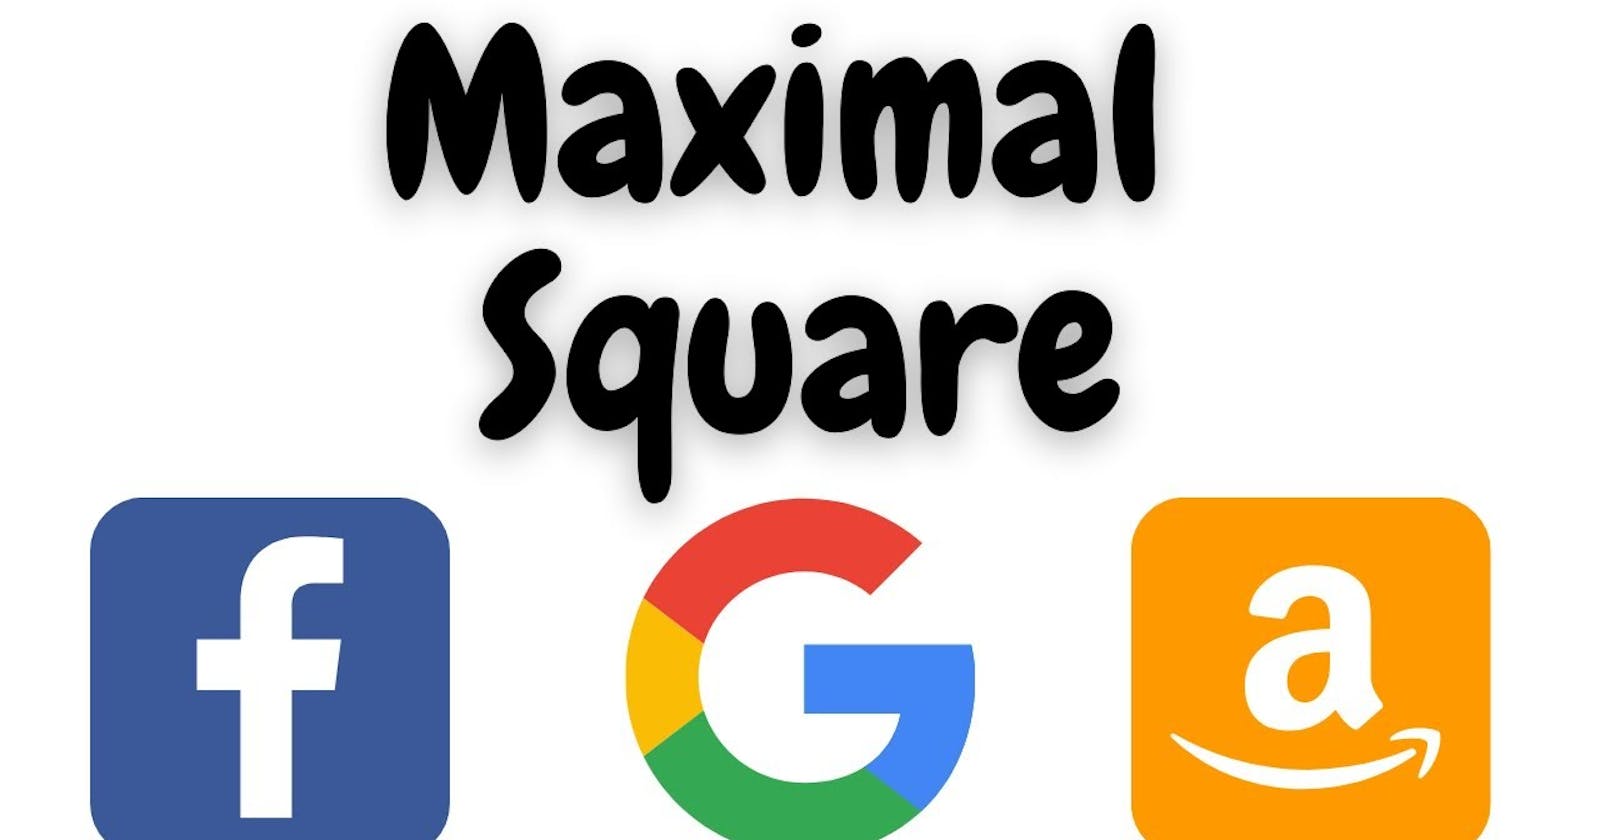 Maximal Square (Recursive and Iterative DP)